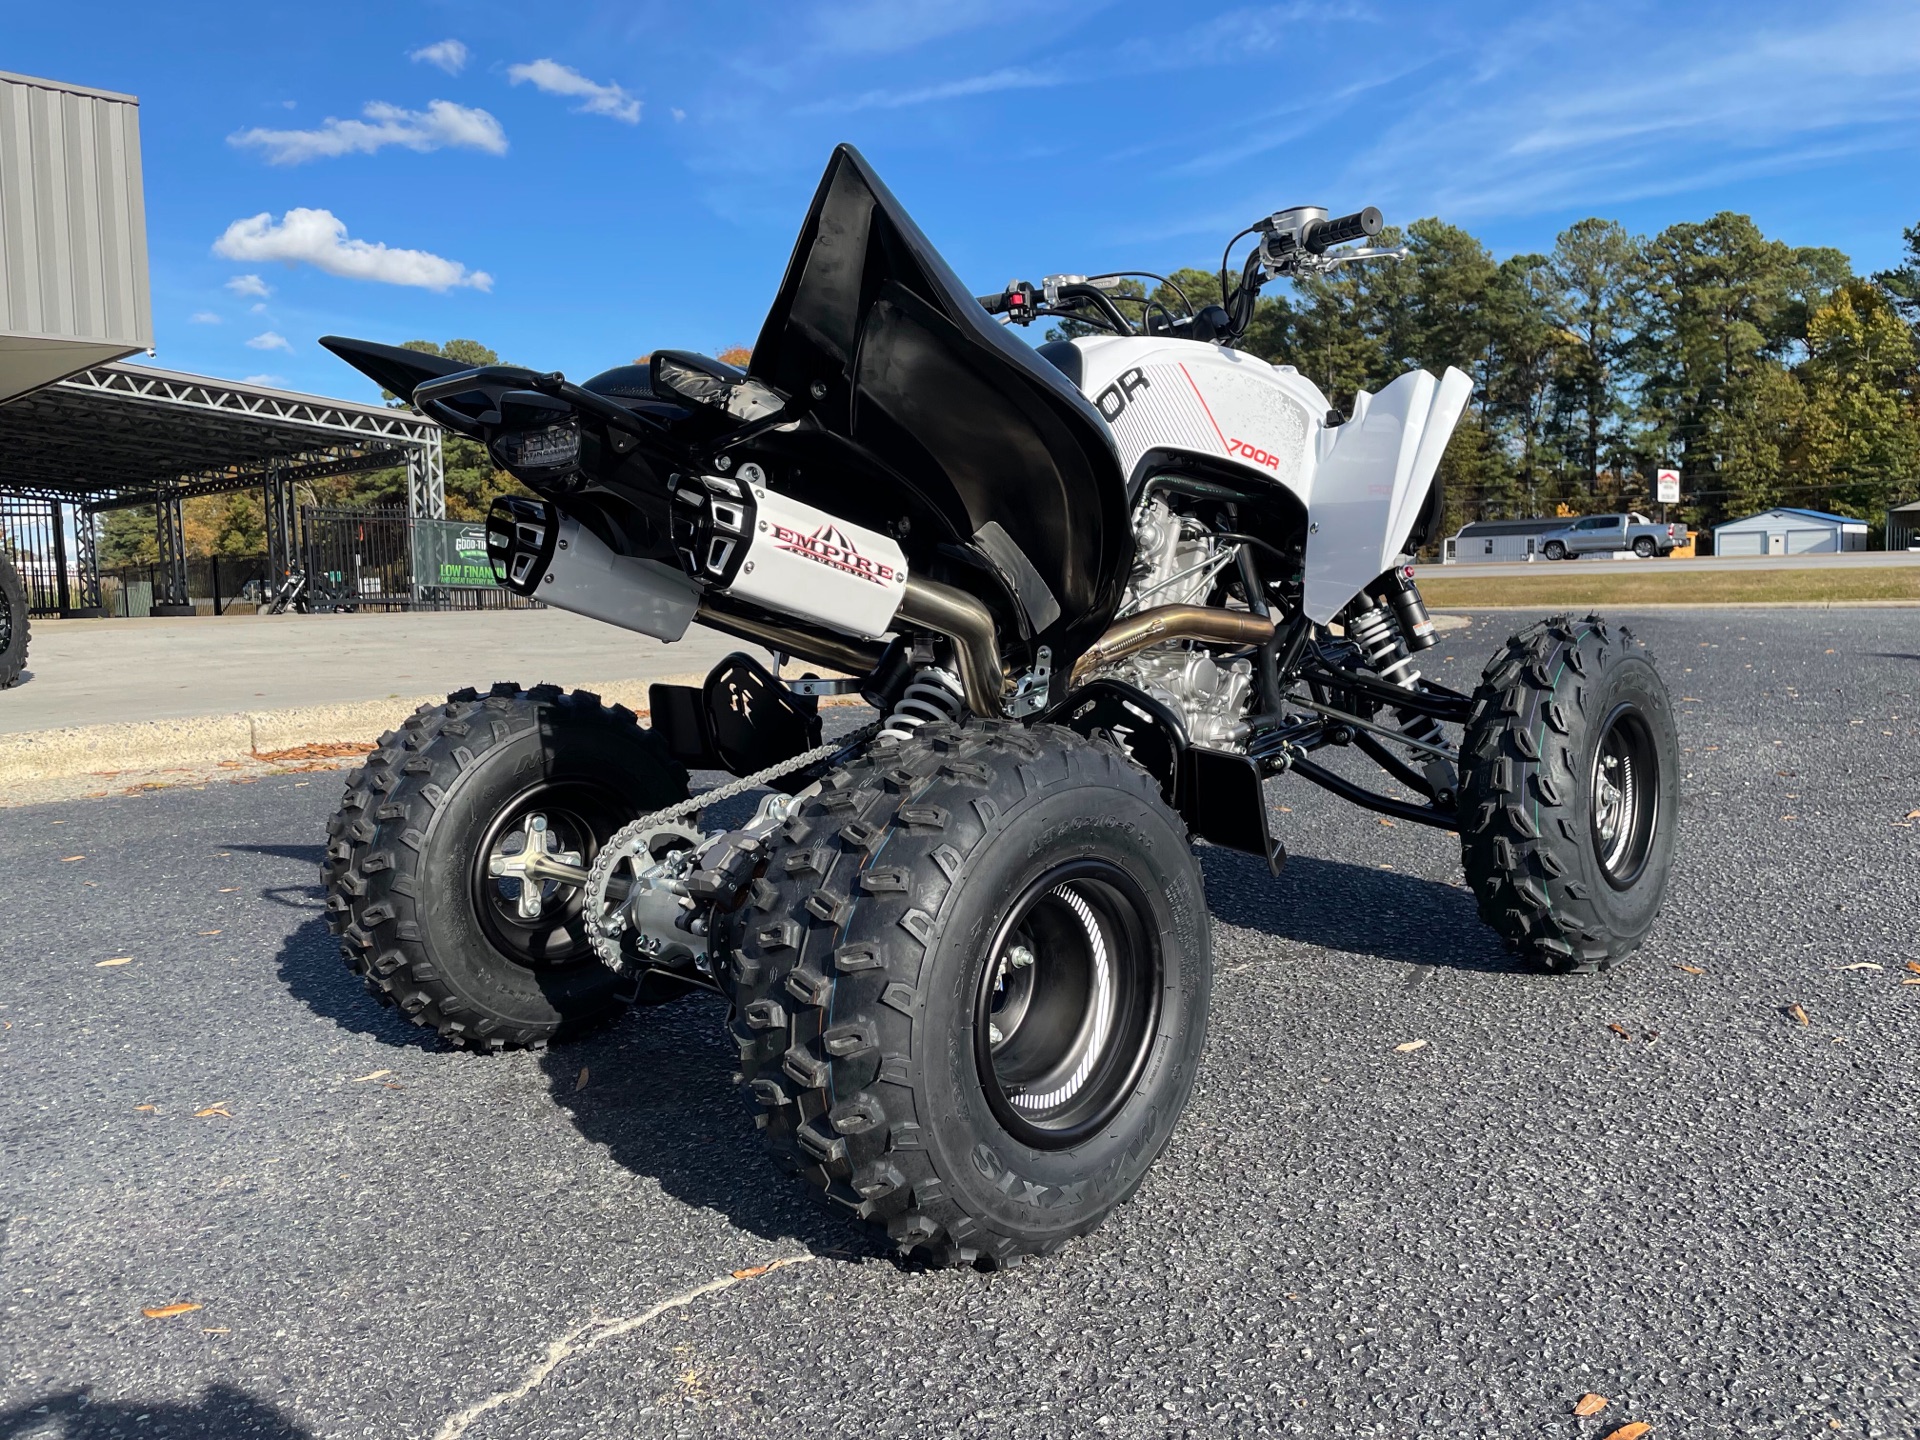 2021 Yamaha Raptor 700R SE in Greenville, North Carolina - Photo 11